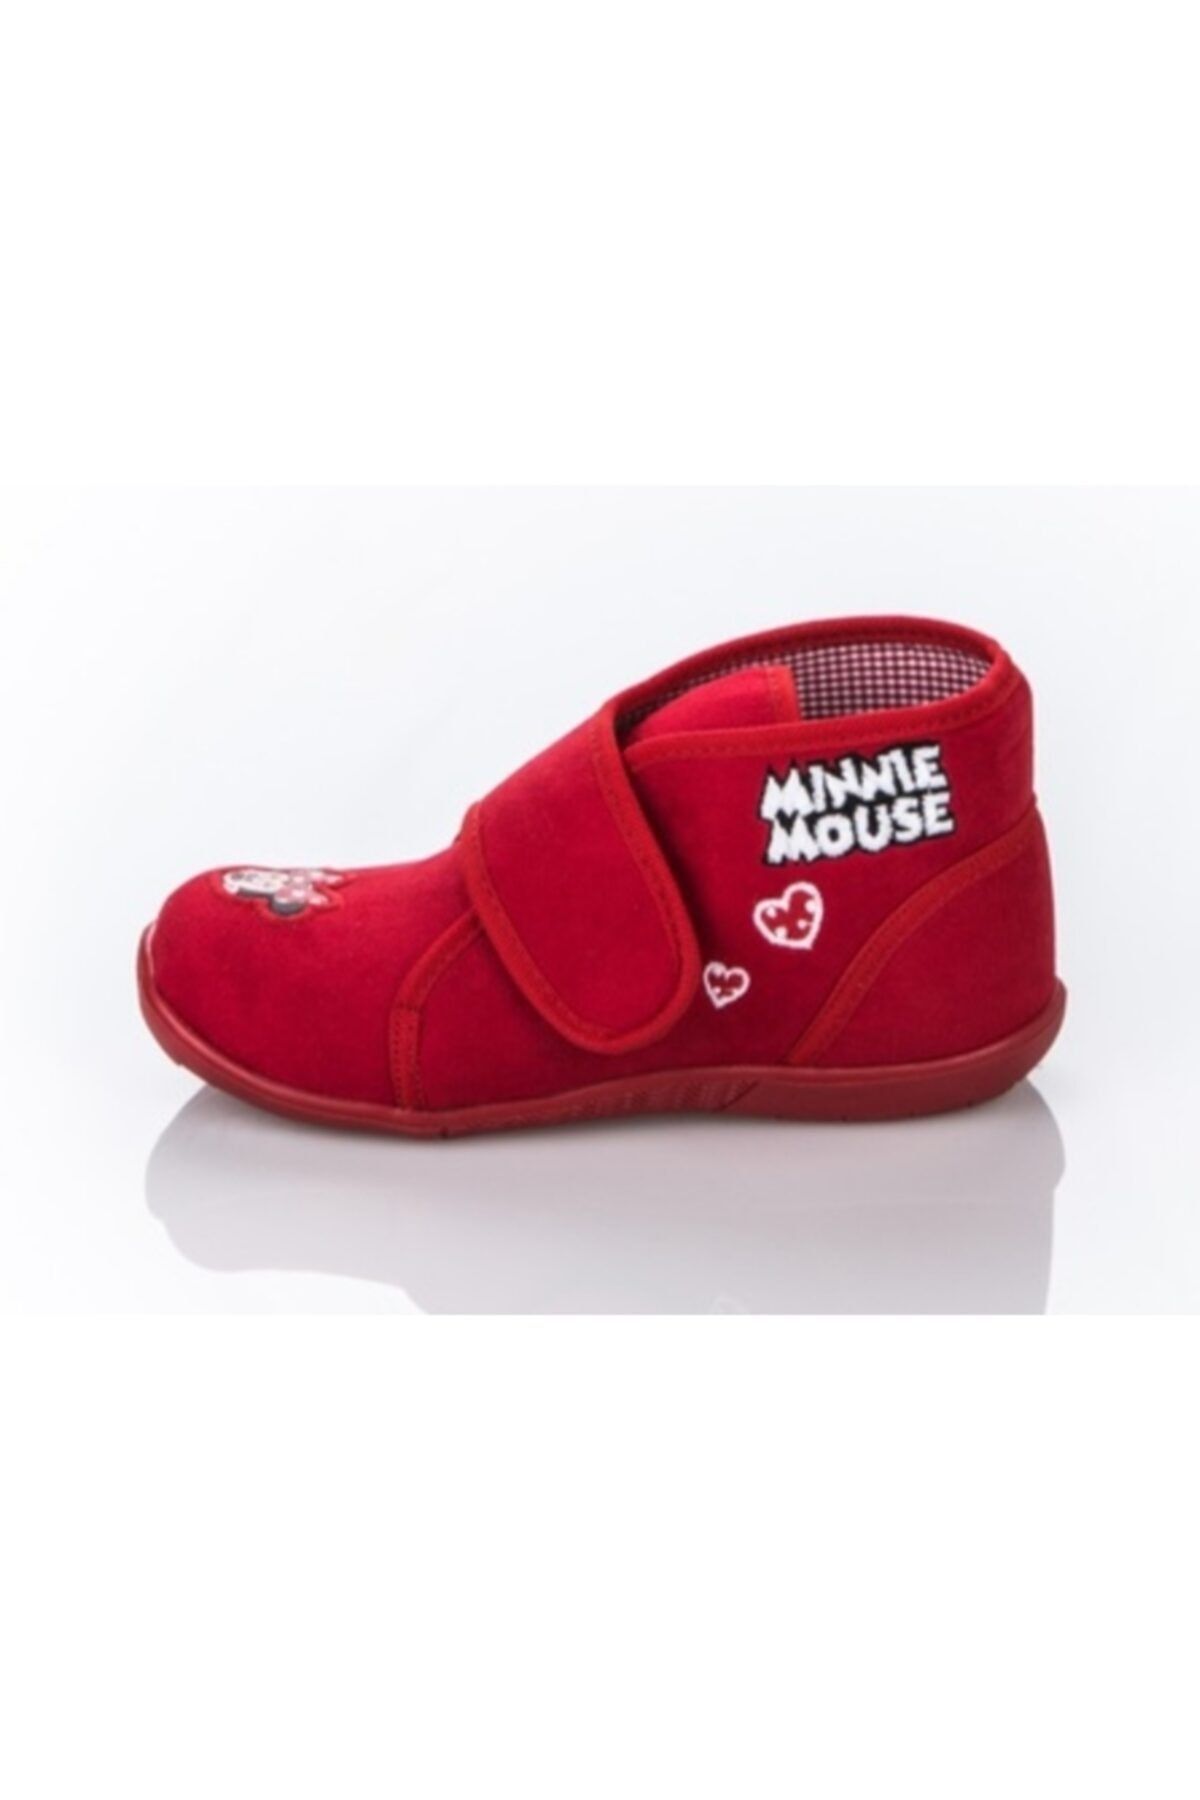 MINNIE MOUSE Lisanslı Disney Kırmızı Ortopedik Kız Çocuk Ev Ve Kreş Ayakkabısı